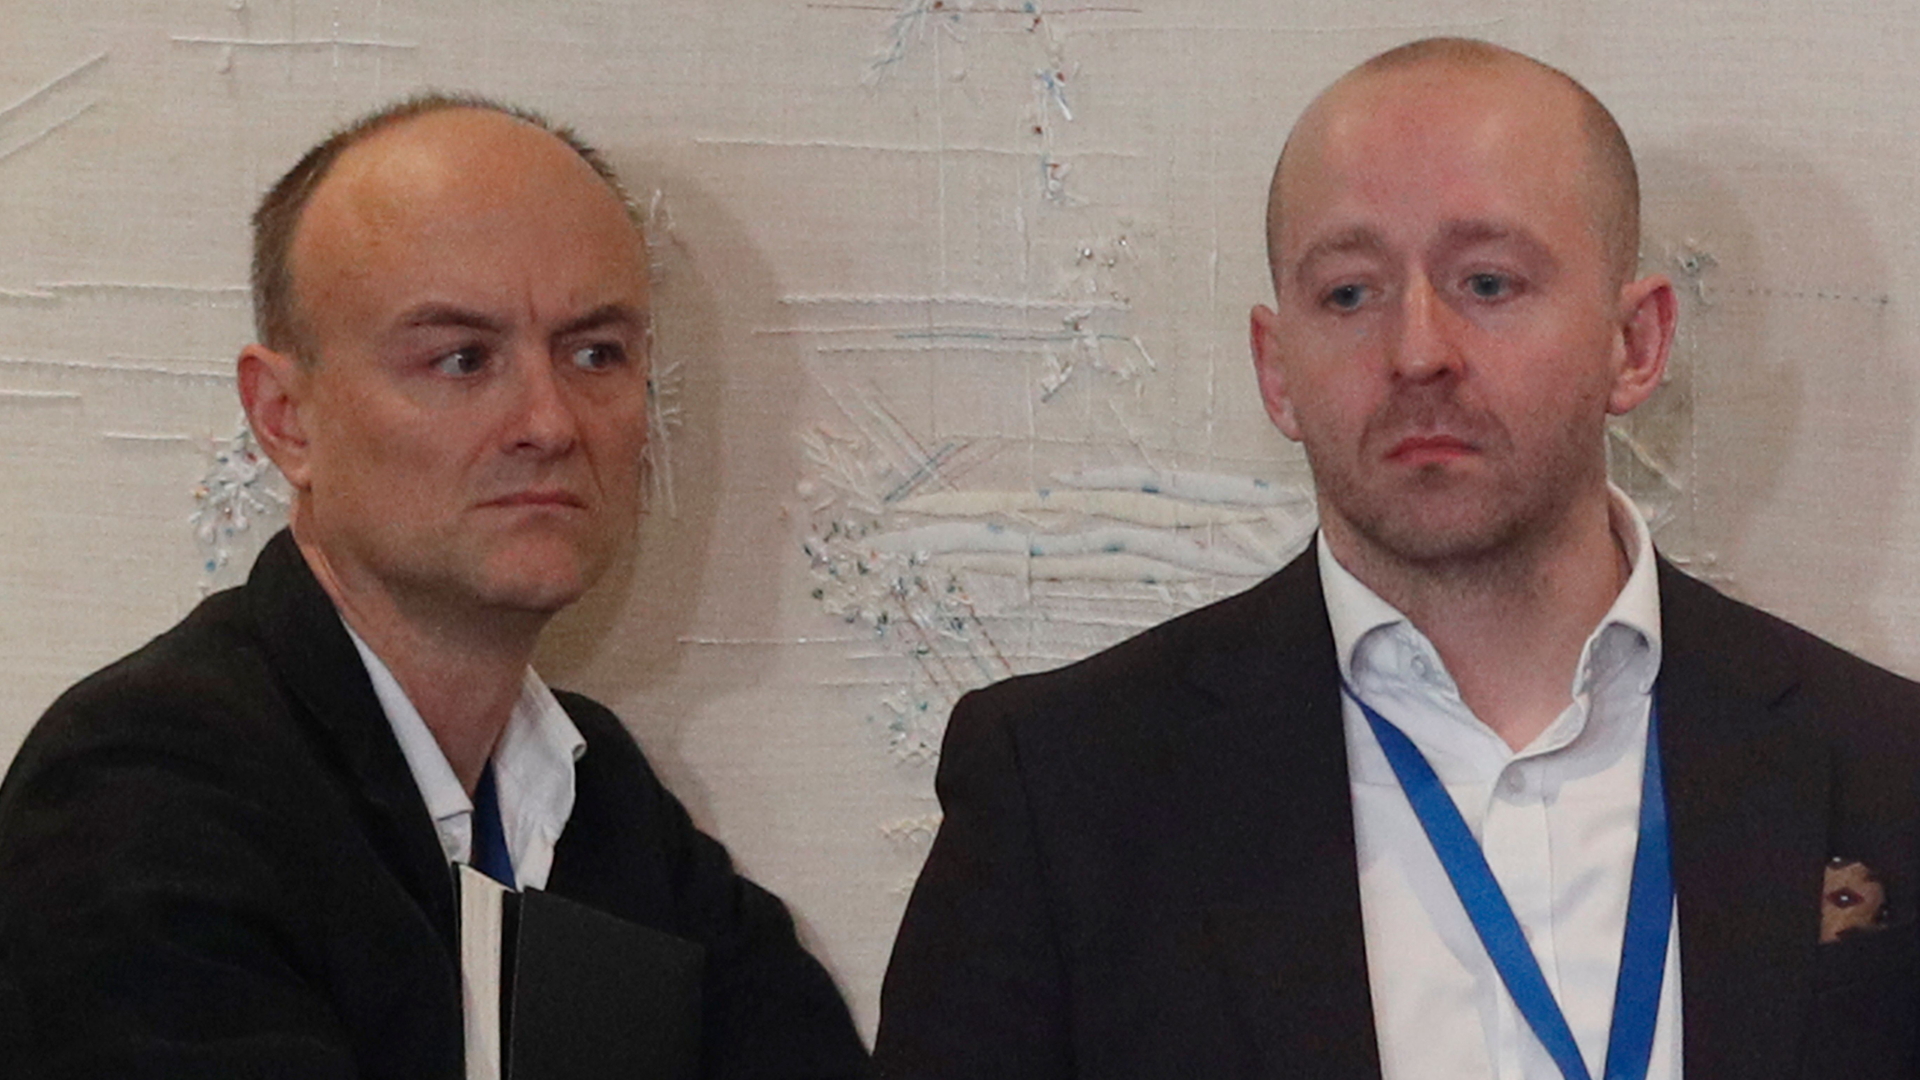 Johnsons Kommunikationschef Lee Cain (rechts) und der Politikberater Dominic Cummings bei einer Pressekonferenz in London  | AFP